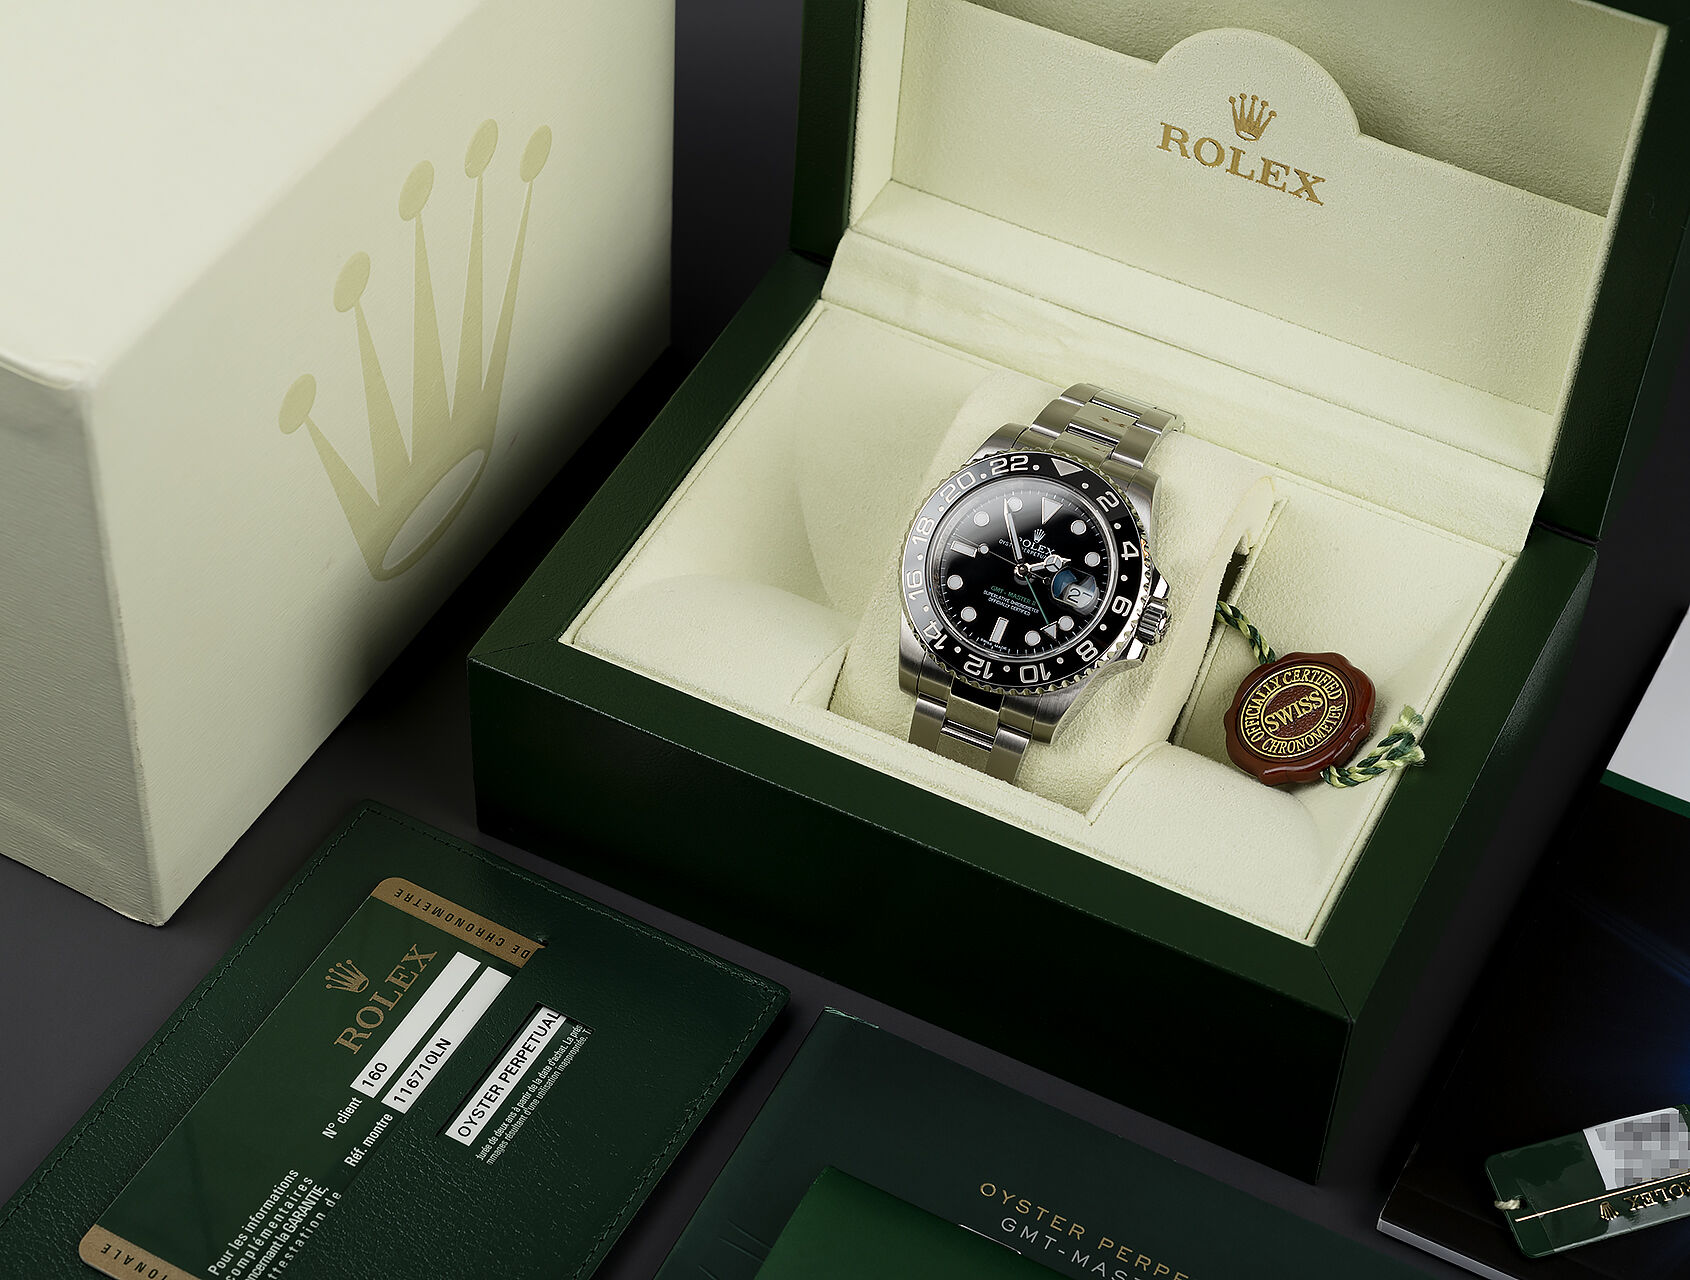 ref 116710LN | 116710LN - Box & Certificate | Rolex GMT-Master II